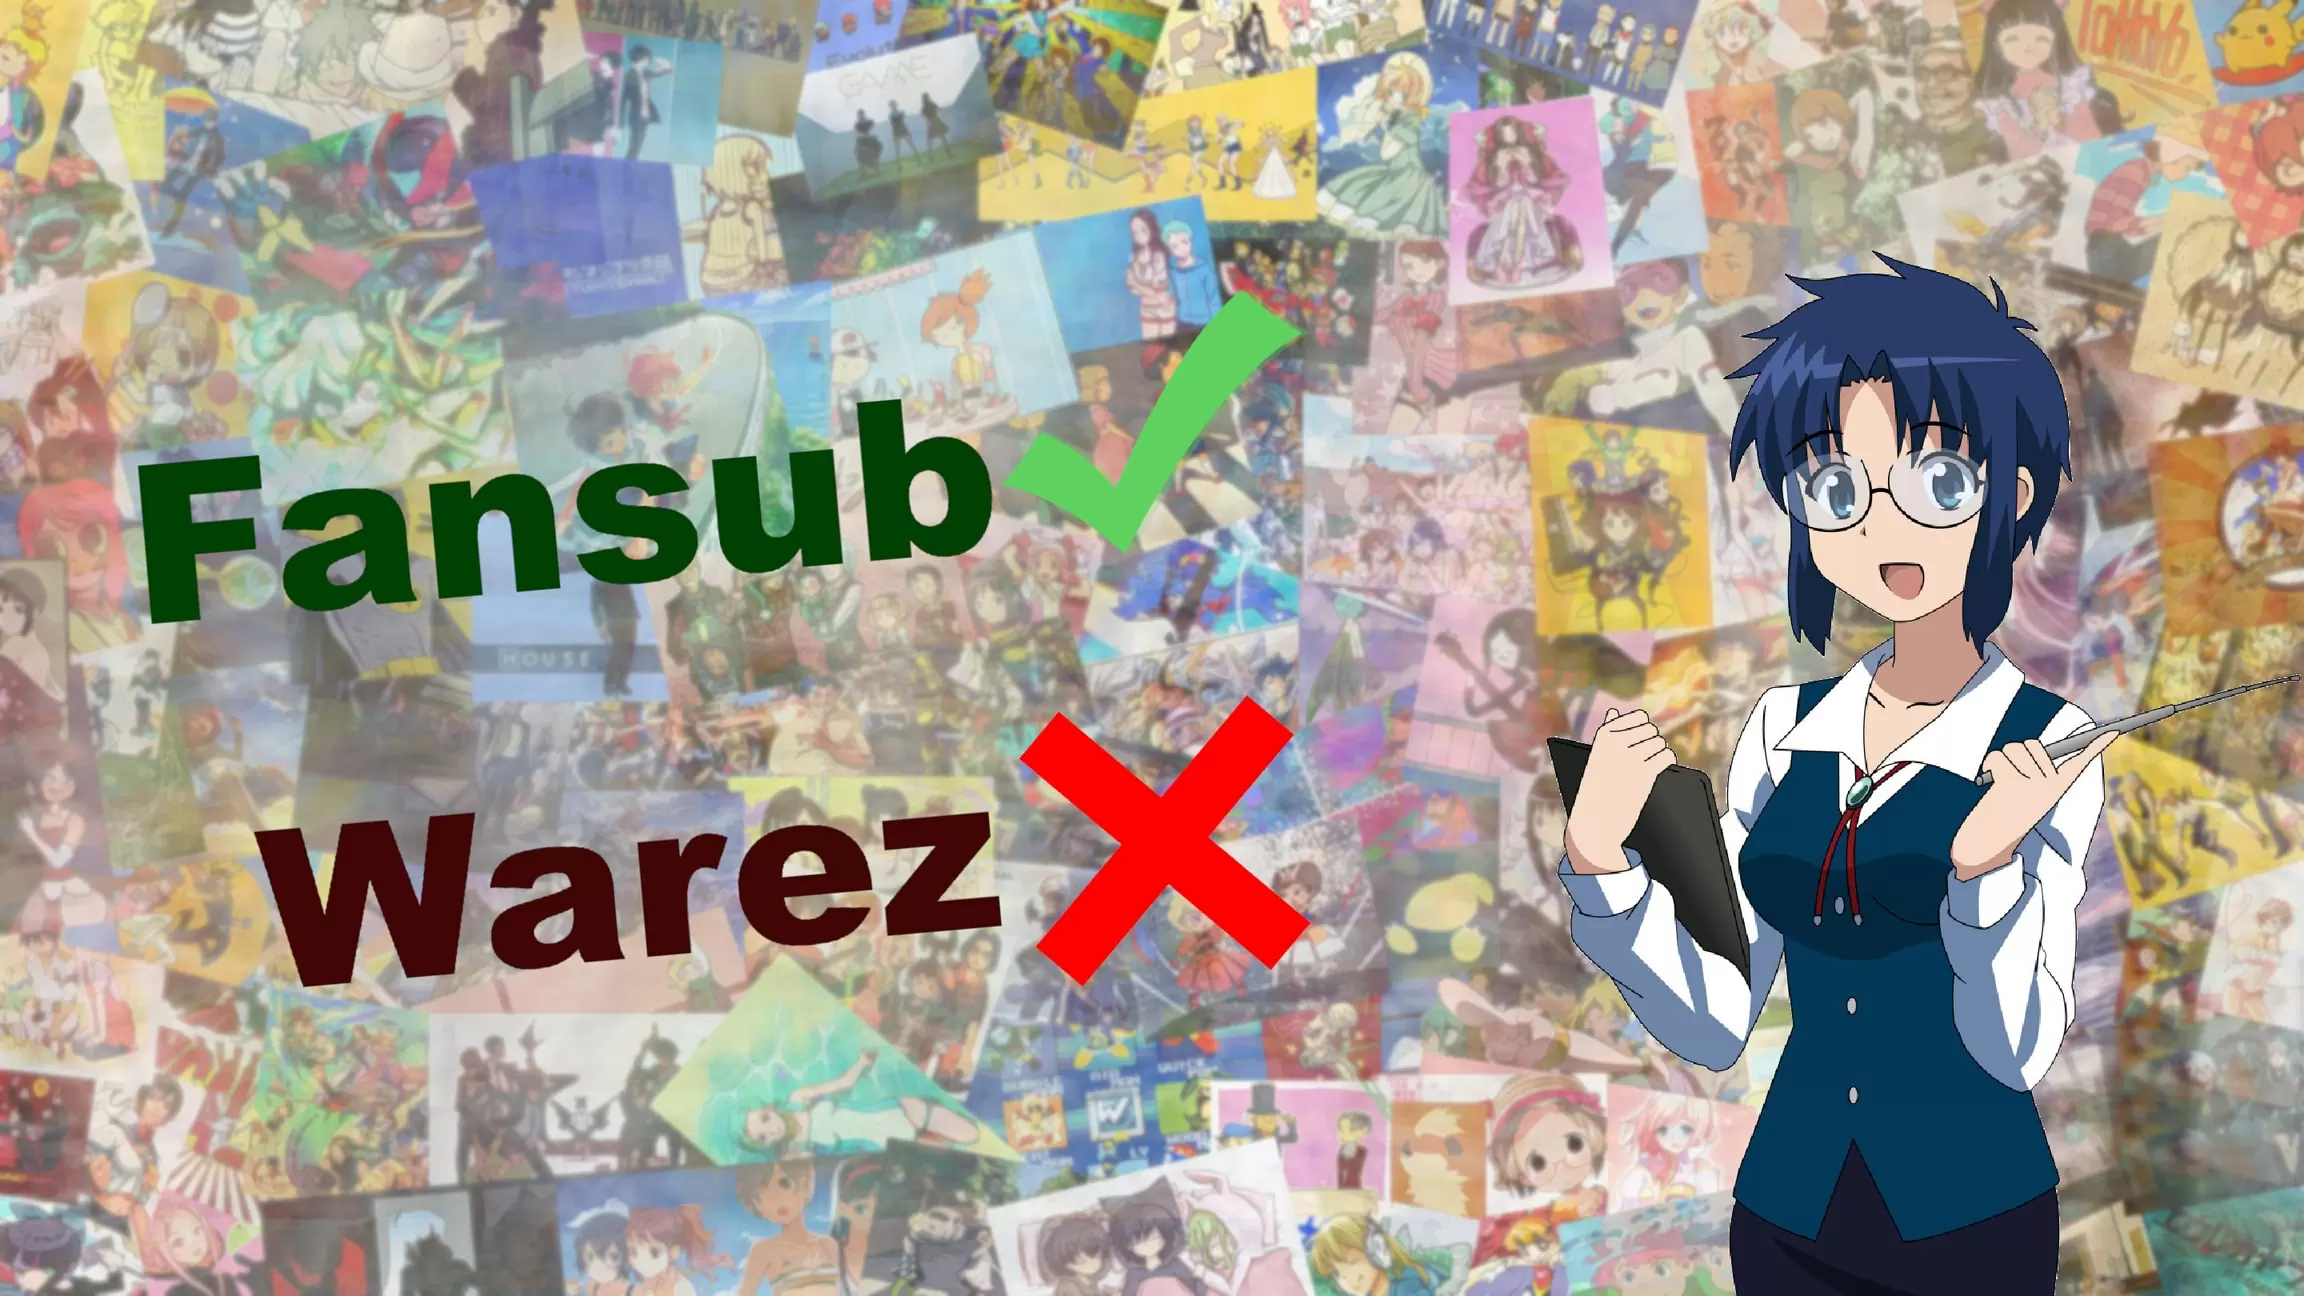 Guida alla visione degli anime: Fansub e siti Warez da evitare